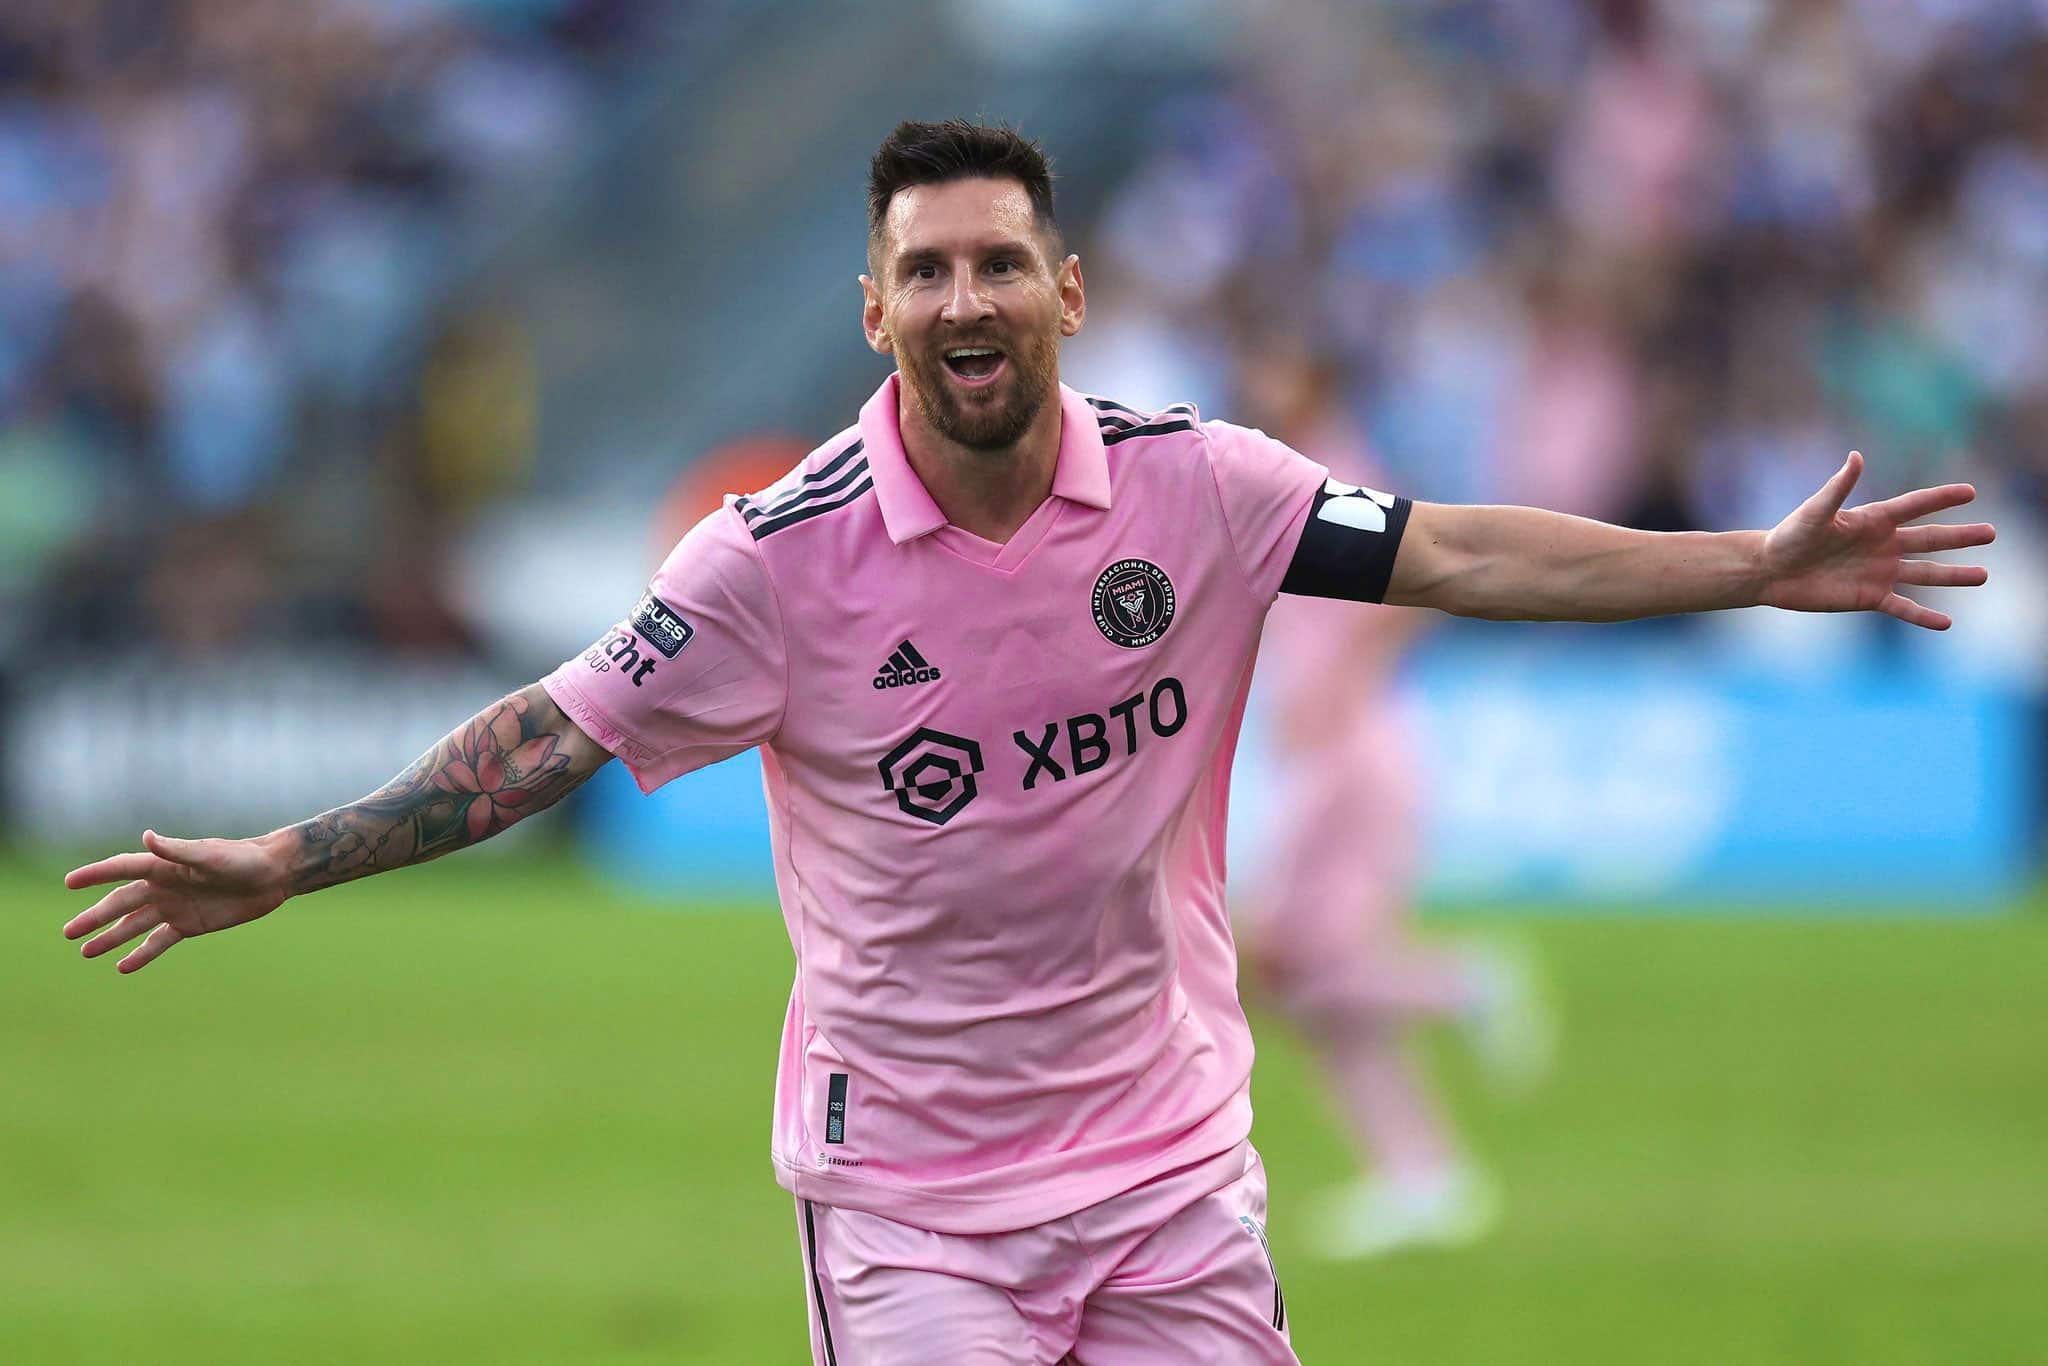 Inarrêtable, Lionel Messi marque encore et offre une finale historique à l’Inter Miami